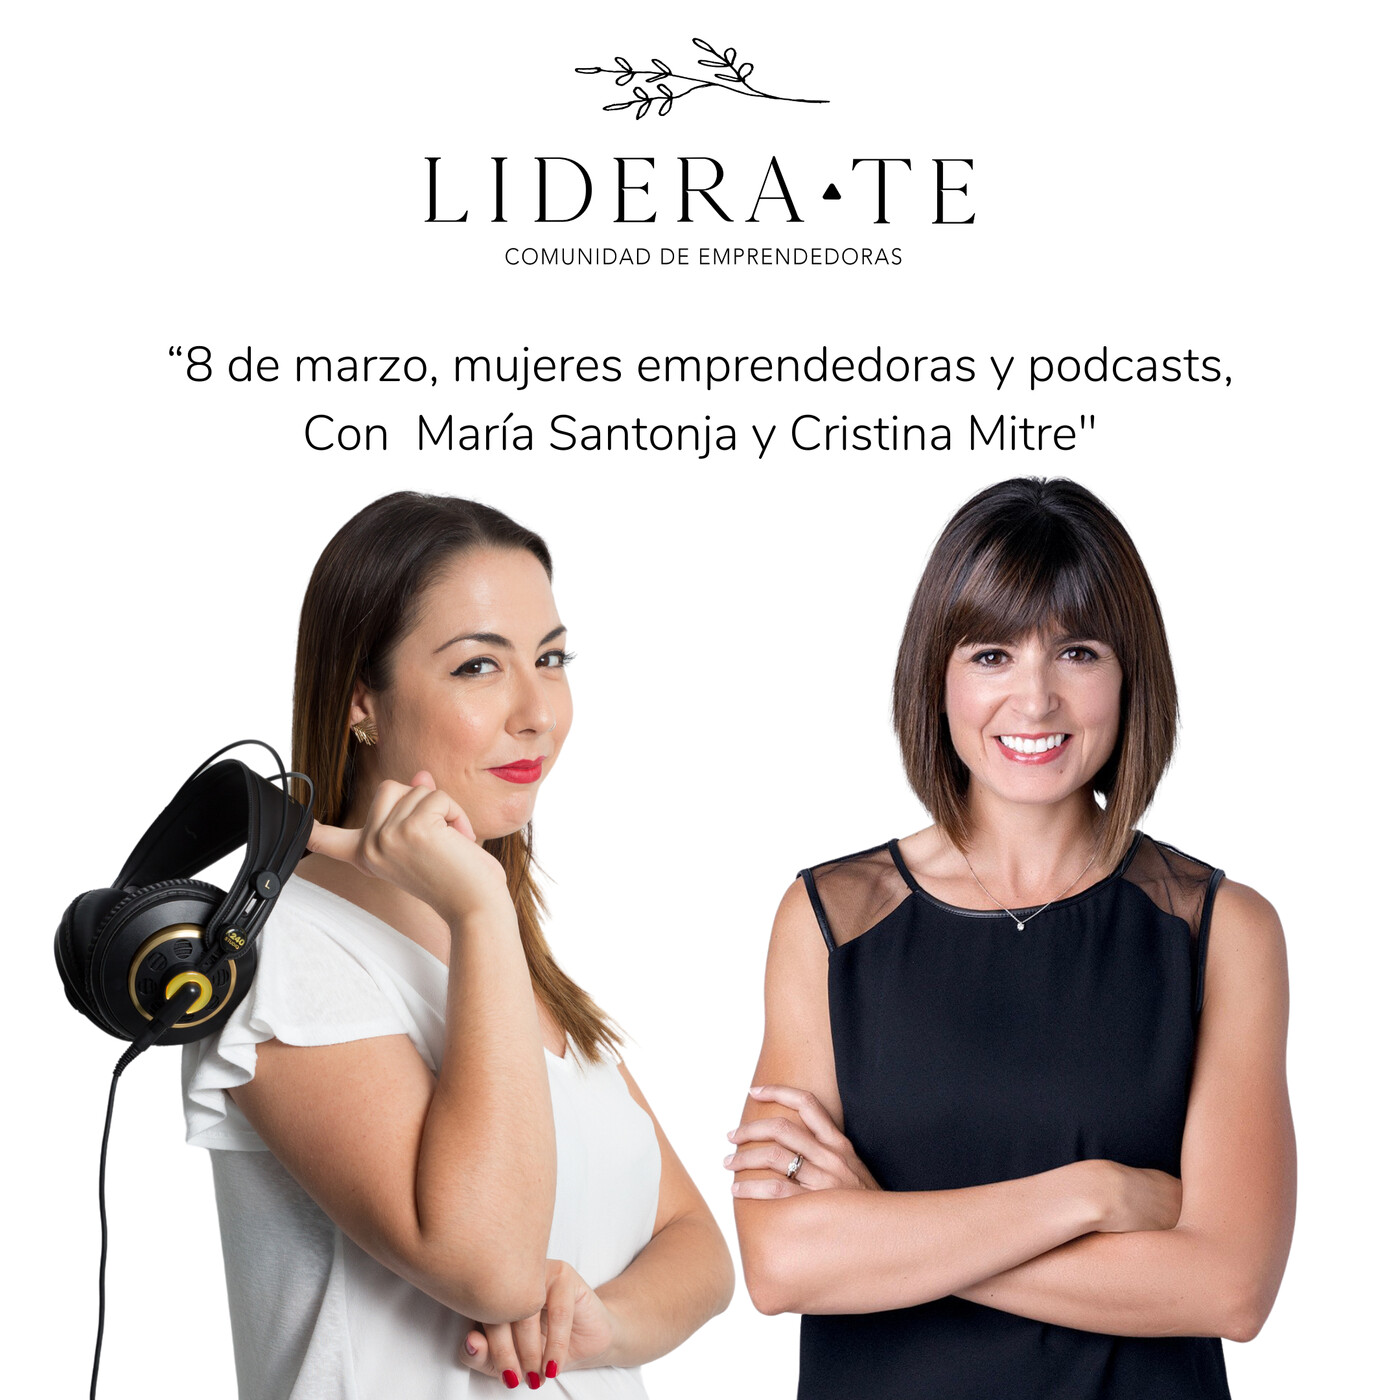 8 de marzo, mujeres emprendedoras y podcasts, con María Santonja y Cristina Mitre